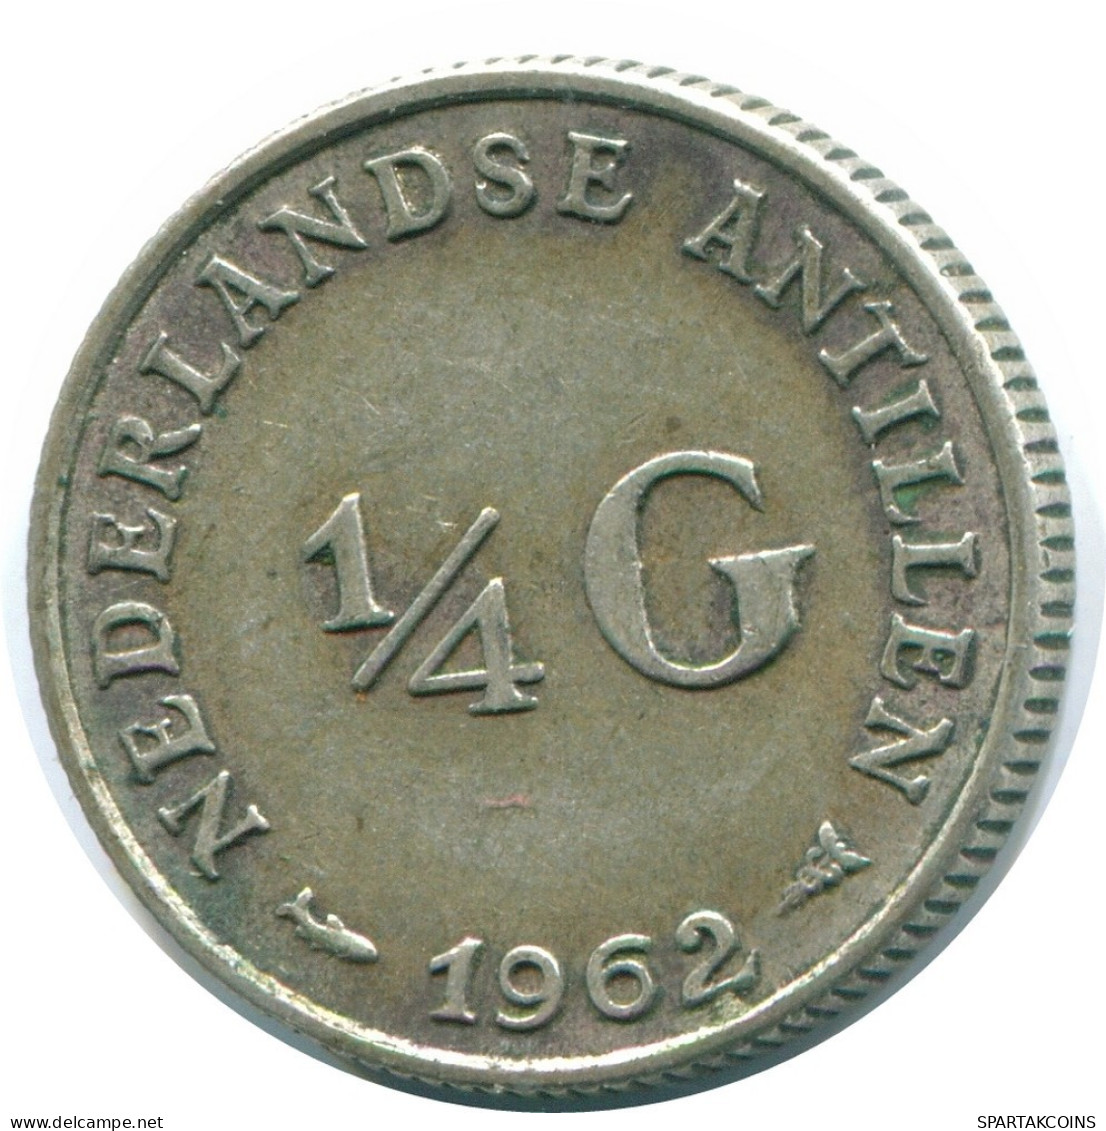 1/4 GULDEN 1962 NIEDERLÄNDISCHE ANTILLEN SILBER Koloniale Münze #NL11156.4.D.A - Niederländische Antillen